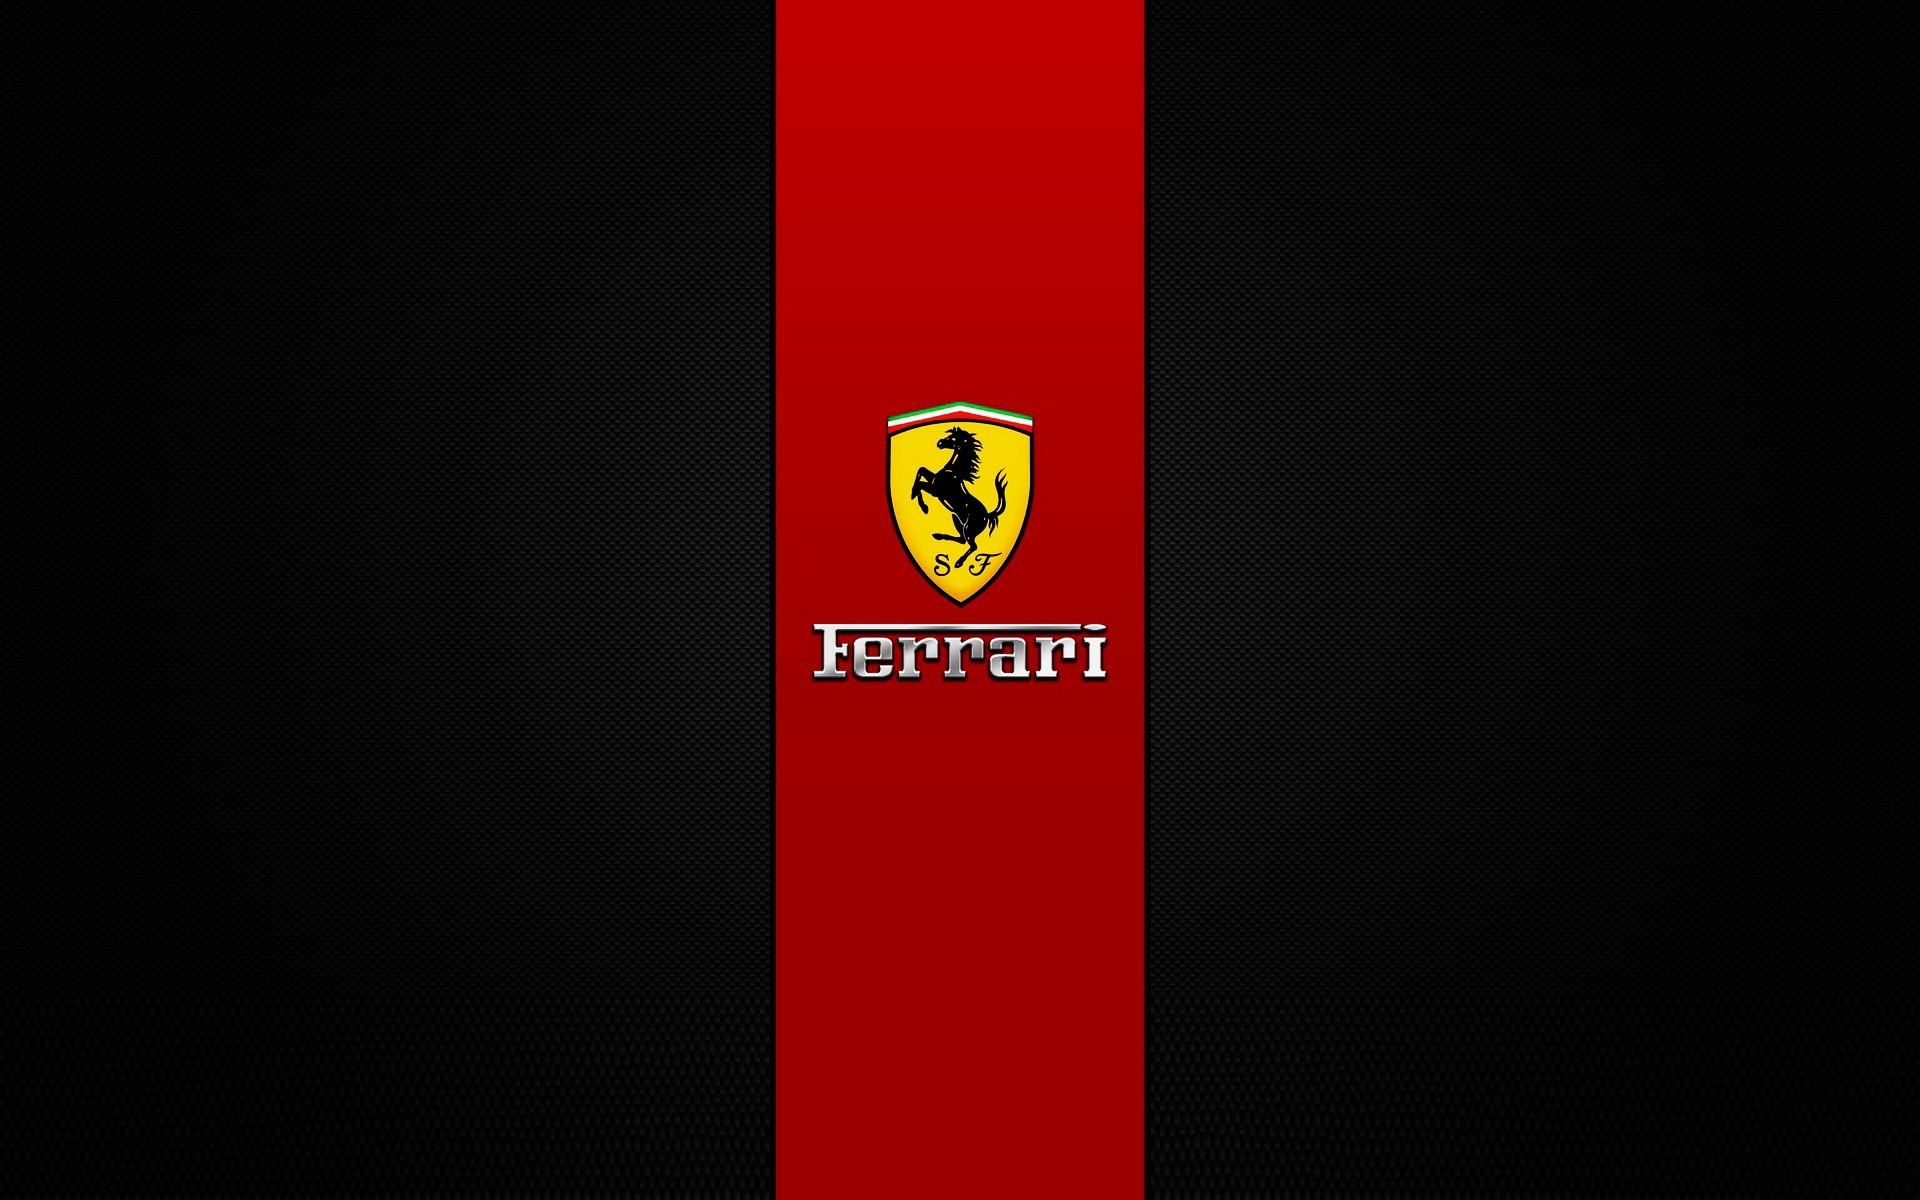 ferrari патриотизм флаг графический дизайн ретро личность алфавит фон красный черный дизайн